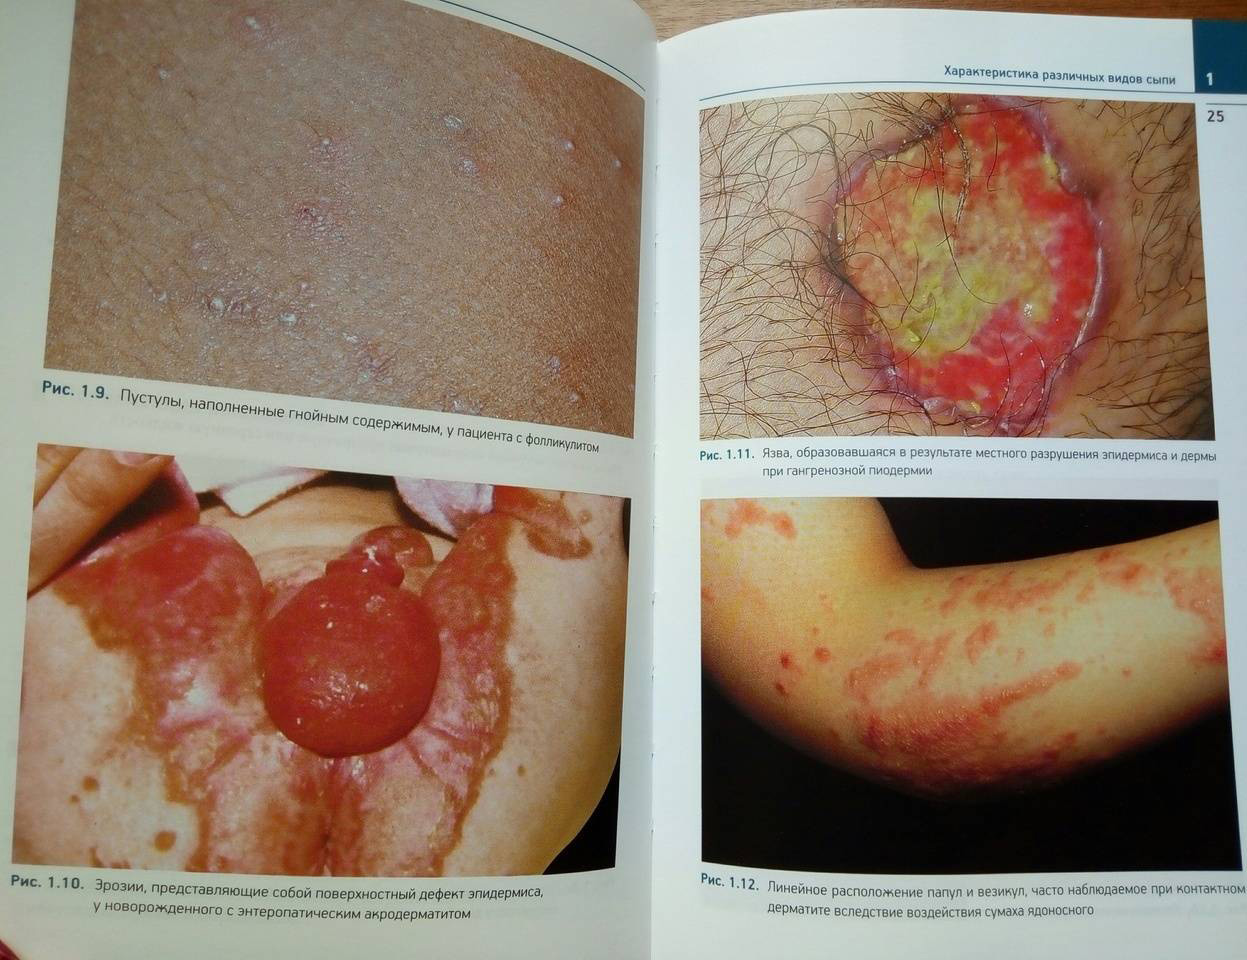 Пример страницы из книги "Детская дерматология. Справочник" - Манчини А. Дж.